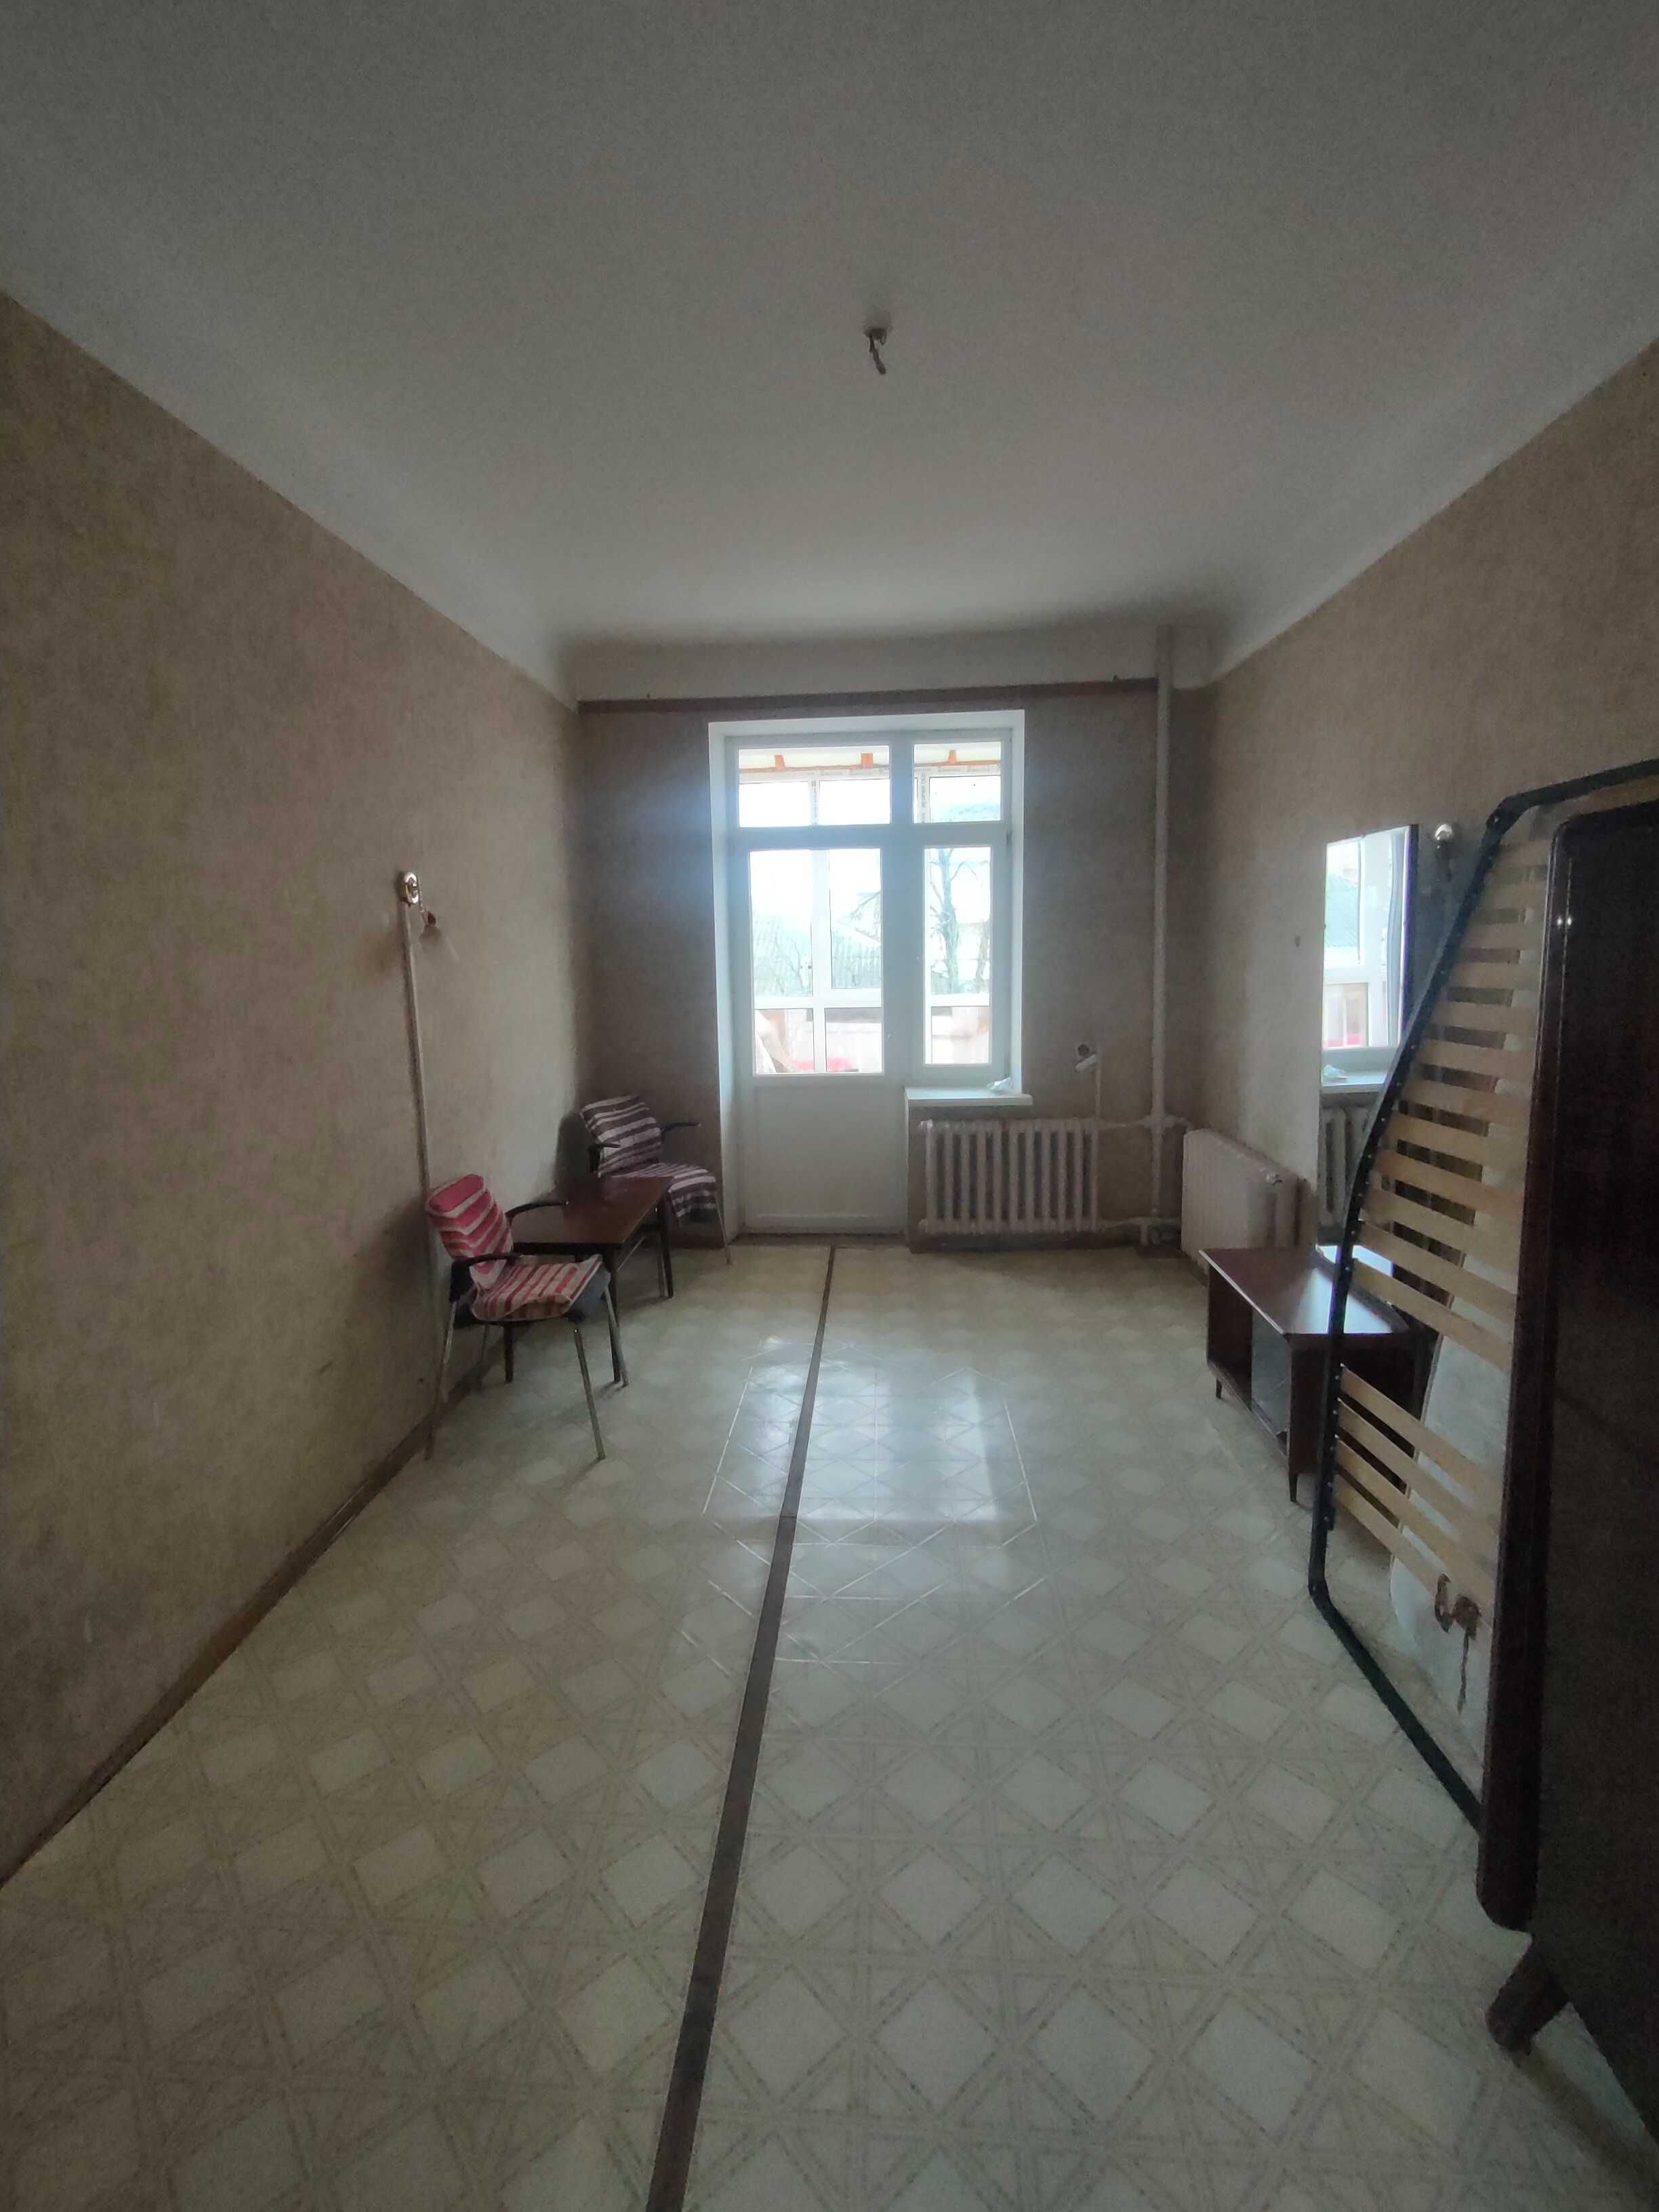 Продам 3-х кімнатну квартиру в центрі міста по вулиці Магістратська